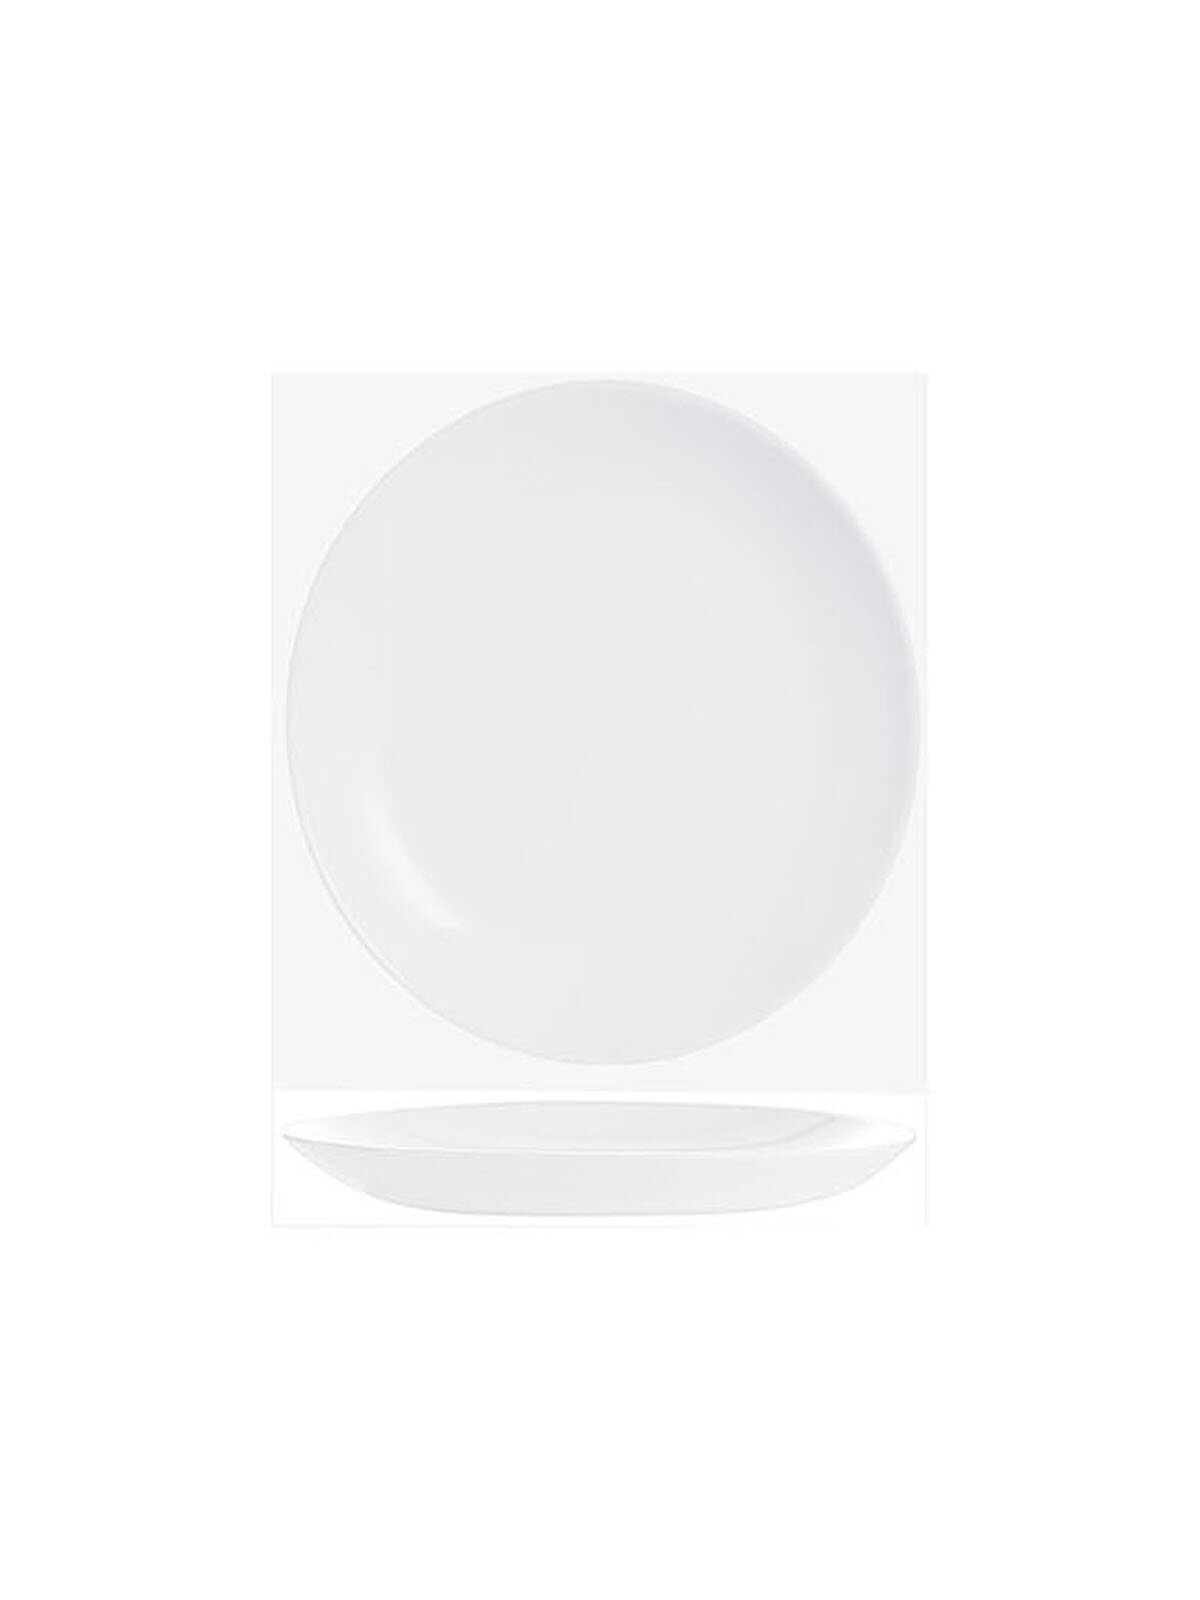 Тарелки десертные 4 шт Arcoroc Evolutions White, стеклянные, 19 см